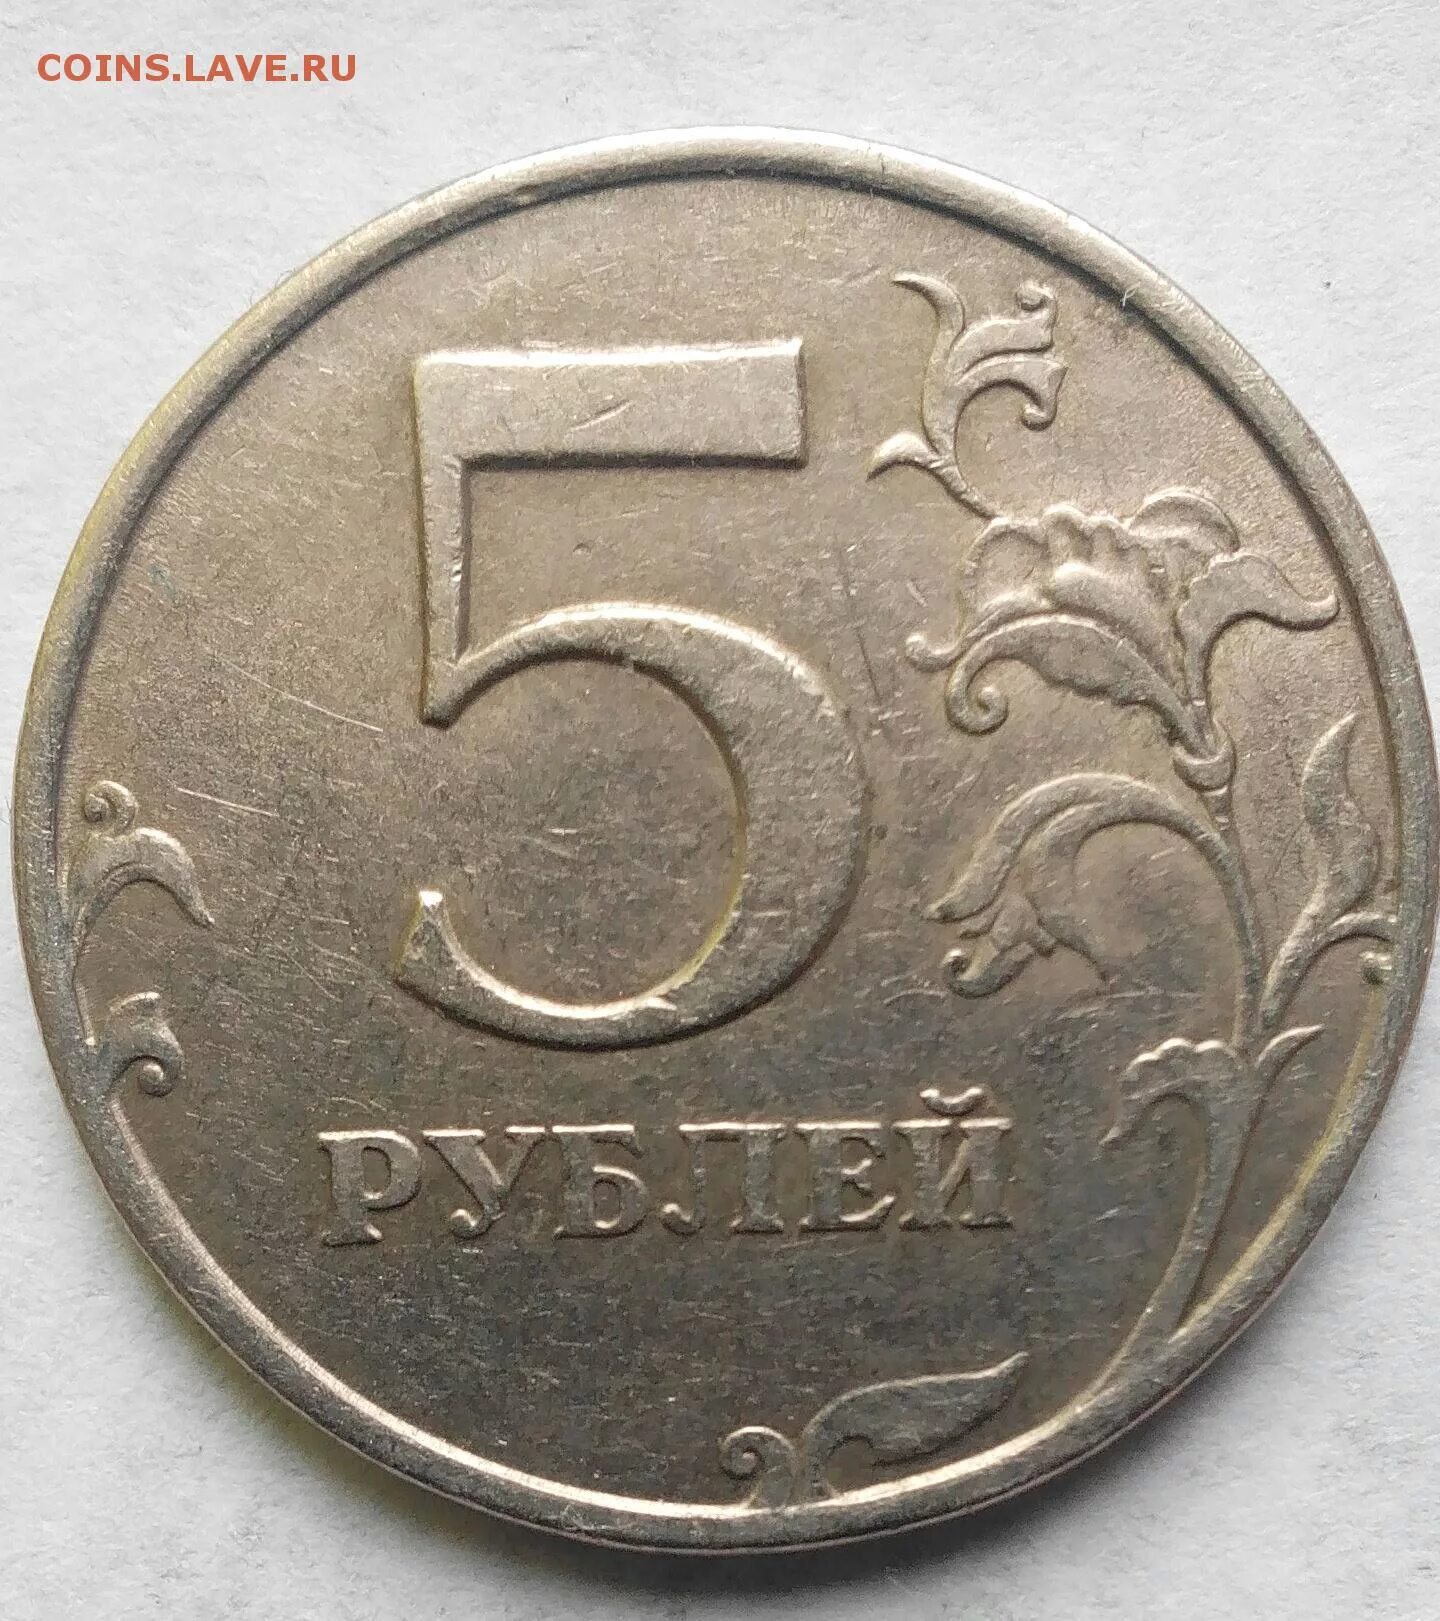 5 Рублей 1998 СПМД редкая.